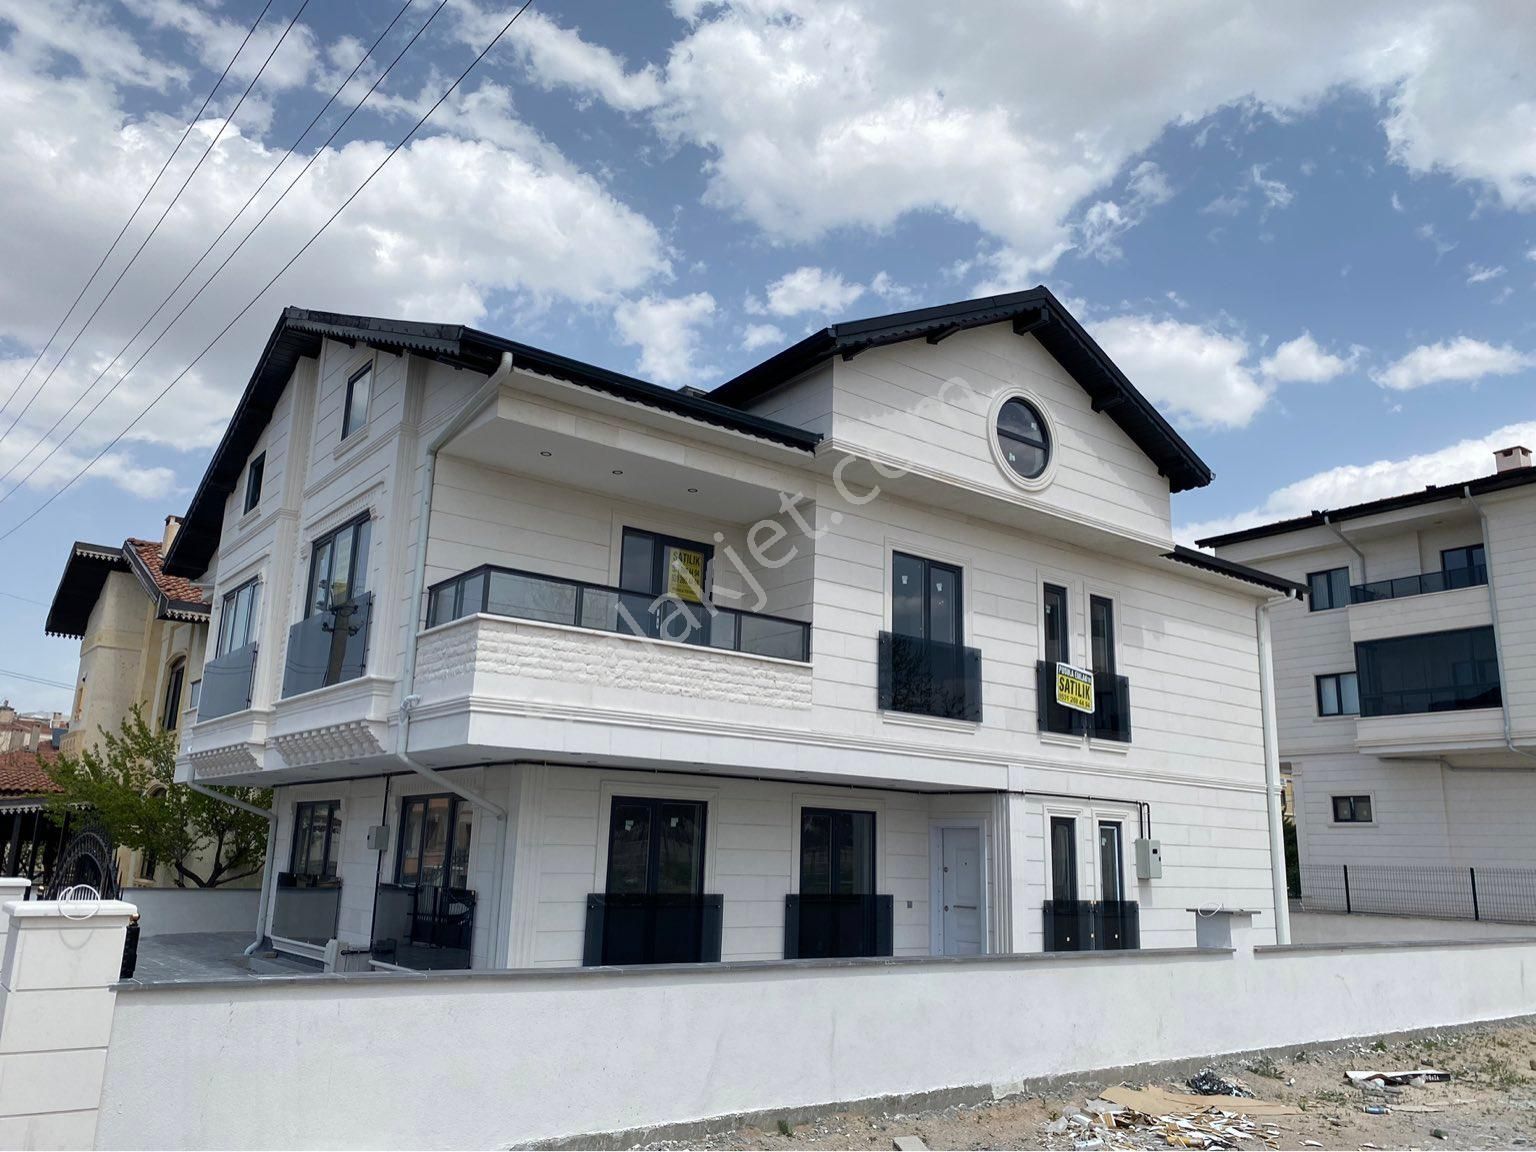 Avanos Cumhuriyet Satılık Müstakil Ev Avanosta Lüks Eksiksiz Tasarlanmış Dubleks Villa